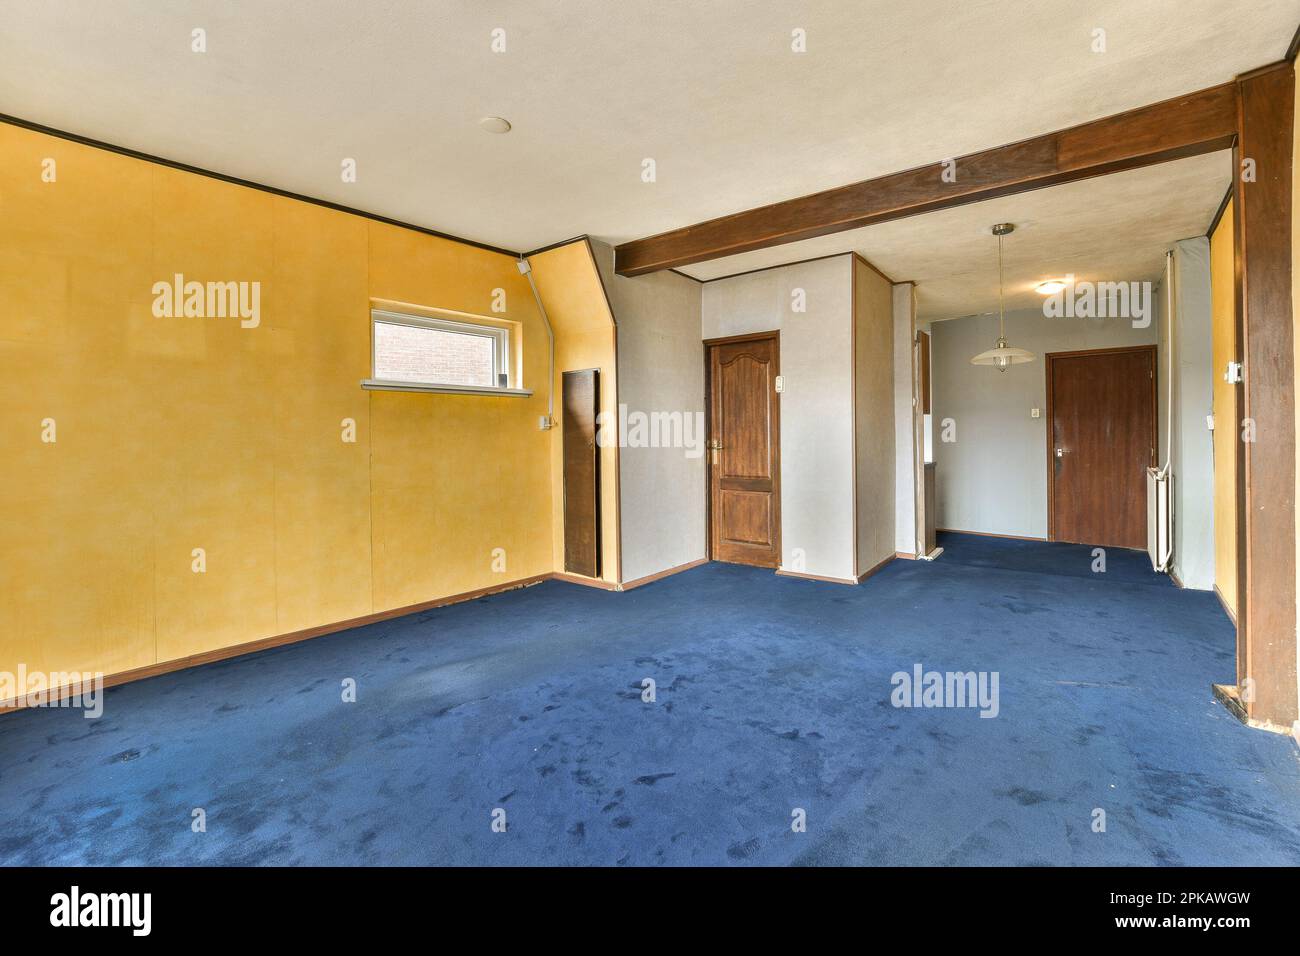 Ein leerer Raum mit gelben Wänden und blauem Teppichboden, zwei Türen öffnen sich auf beiden Seiten zur anderen Seite Stockfoto